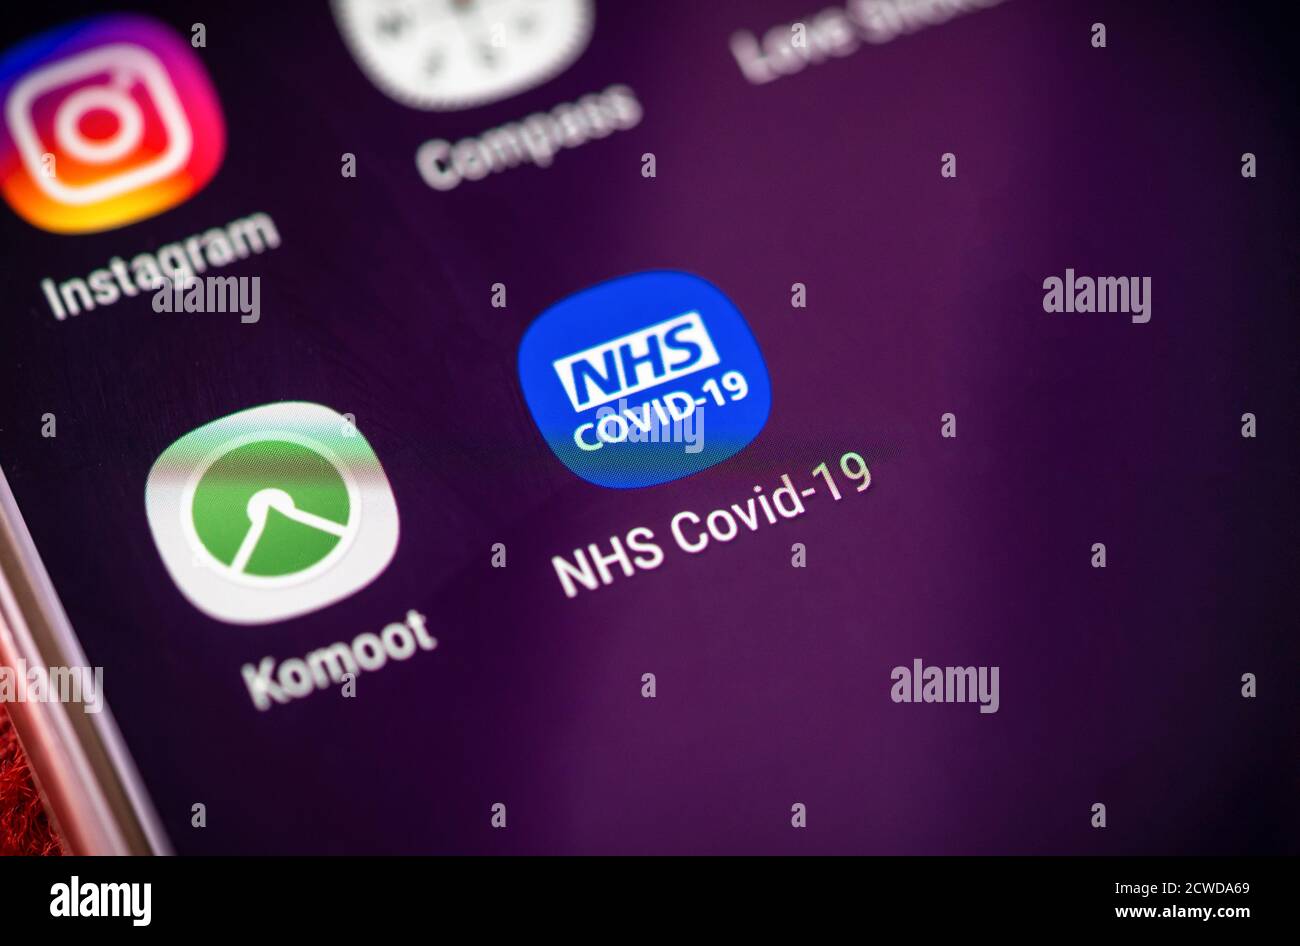 Icône de l'application NHS Covid-19 sur l'écran d'un téléphone mobile, l'application a été lancée le 24 septembre 2020 pour être utilisée comme application de recherche de contacts en Angleterre et au pays de Galles, au Royaume-Uni Banque D'Images